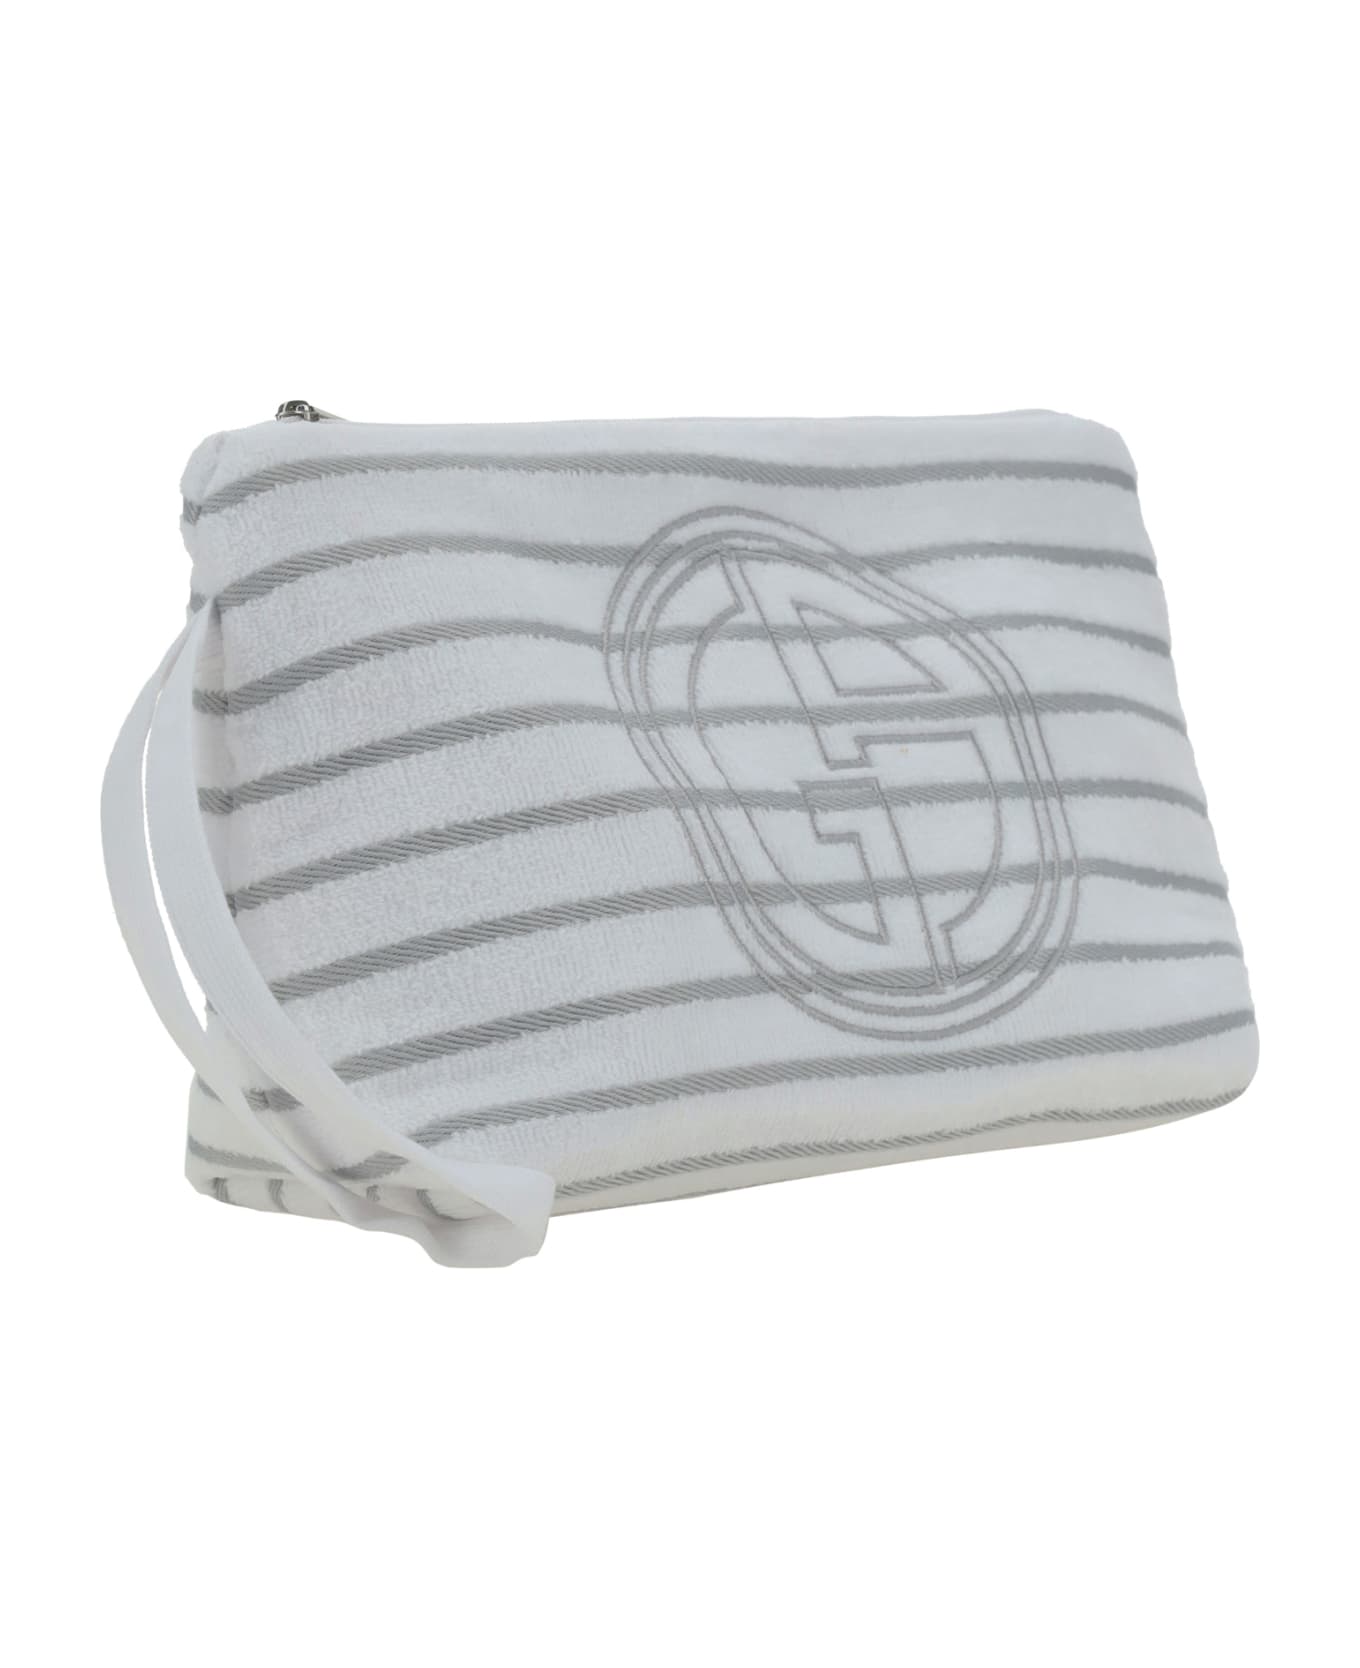 Giorgio Armani Clutch Bag - Brilliant White クラッチバッグ